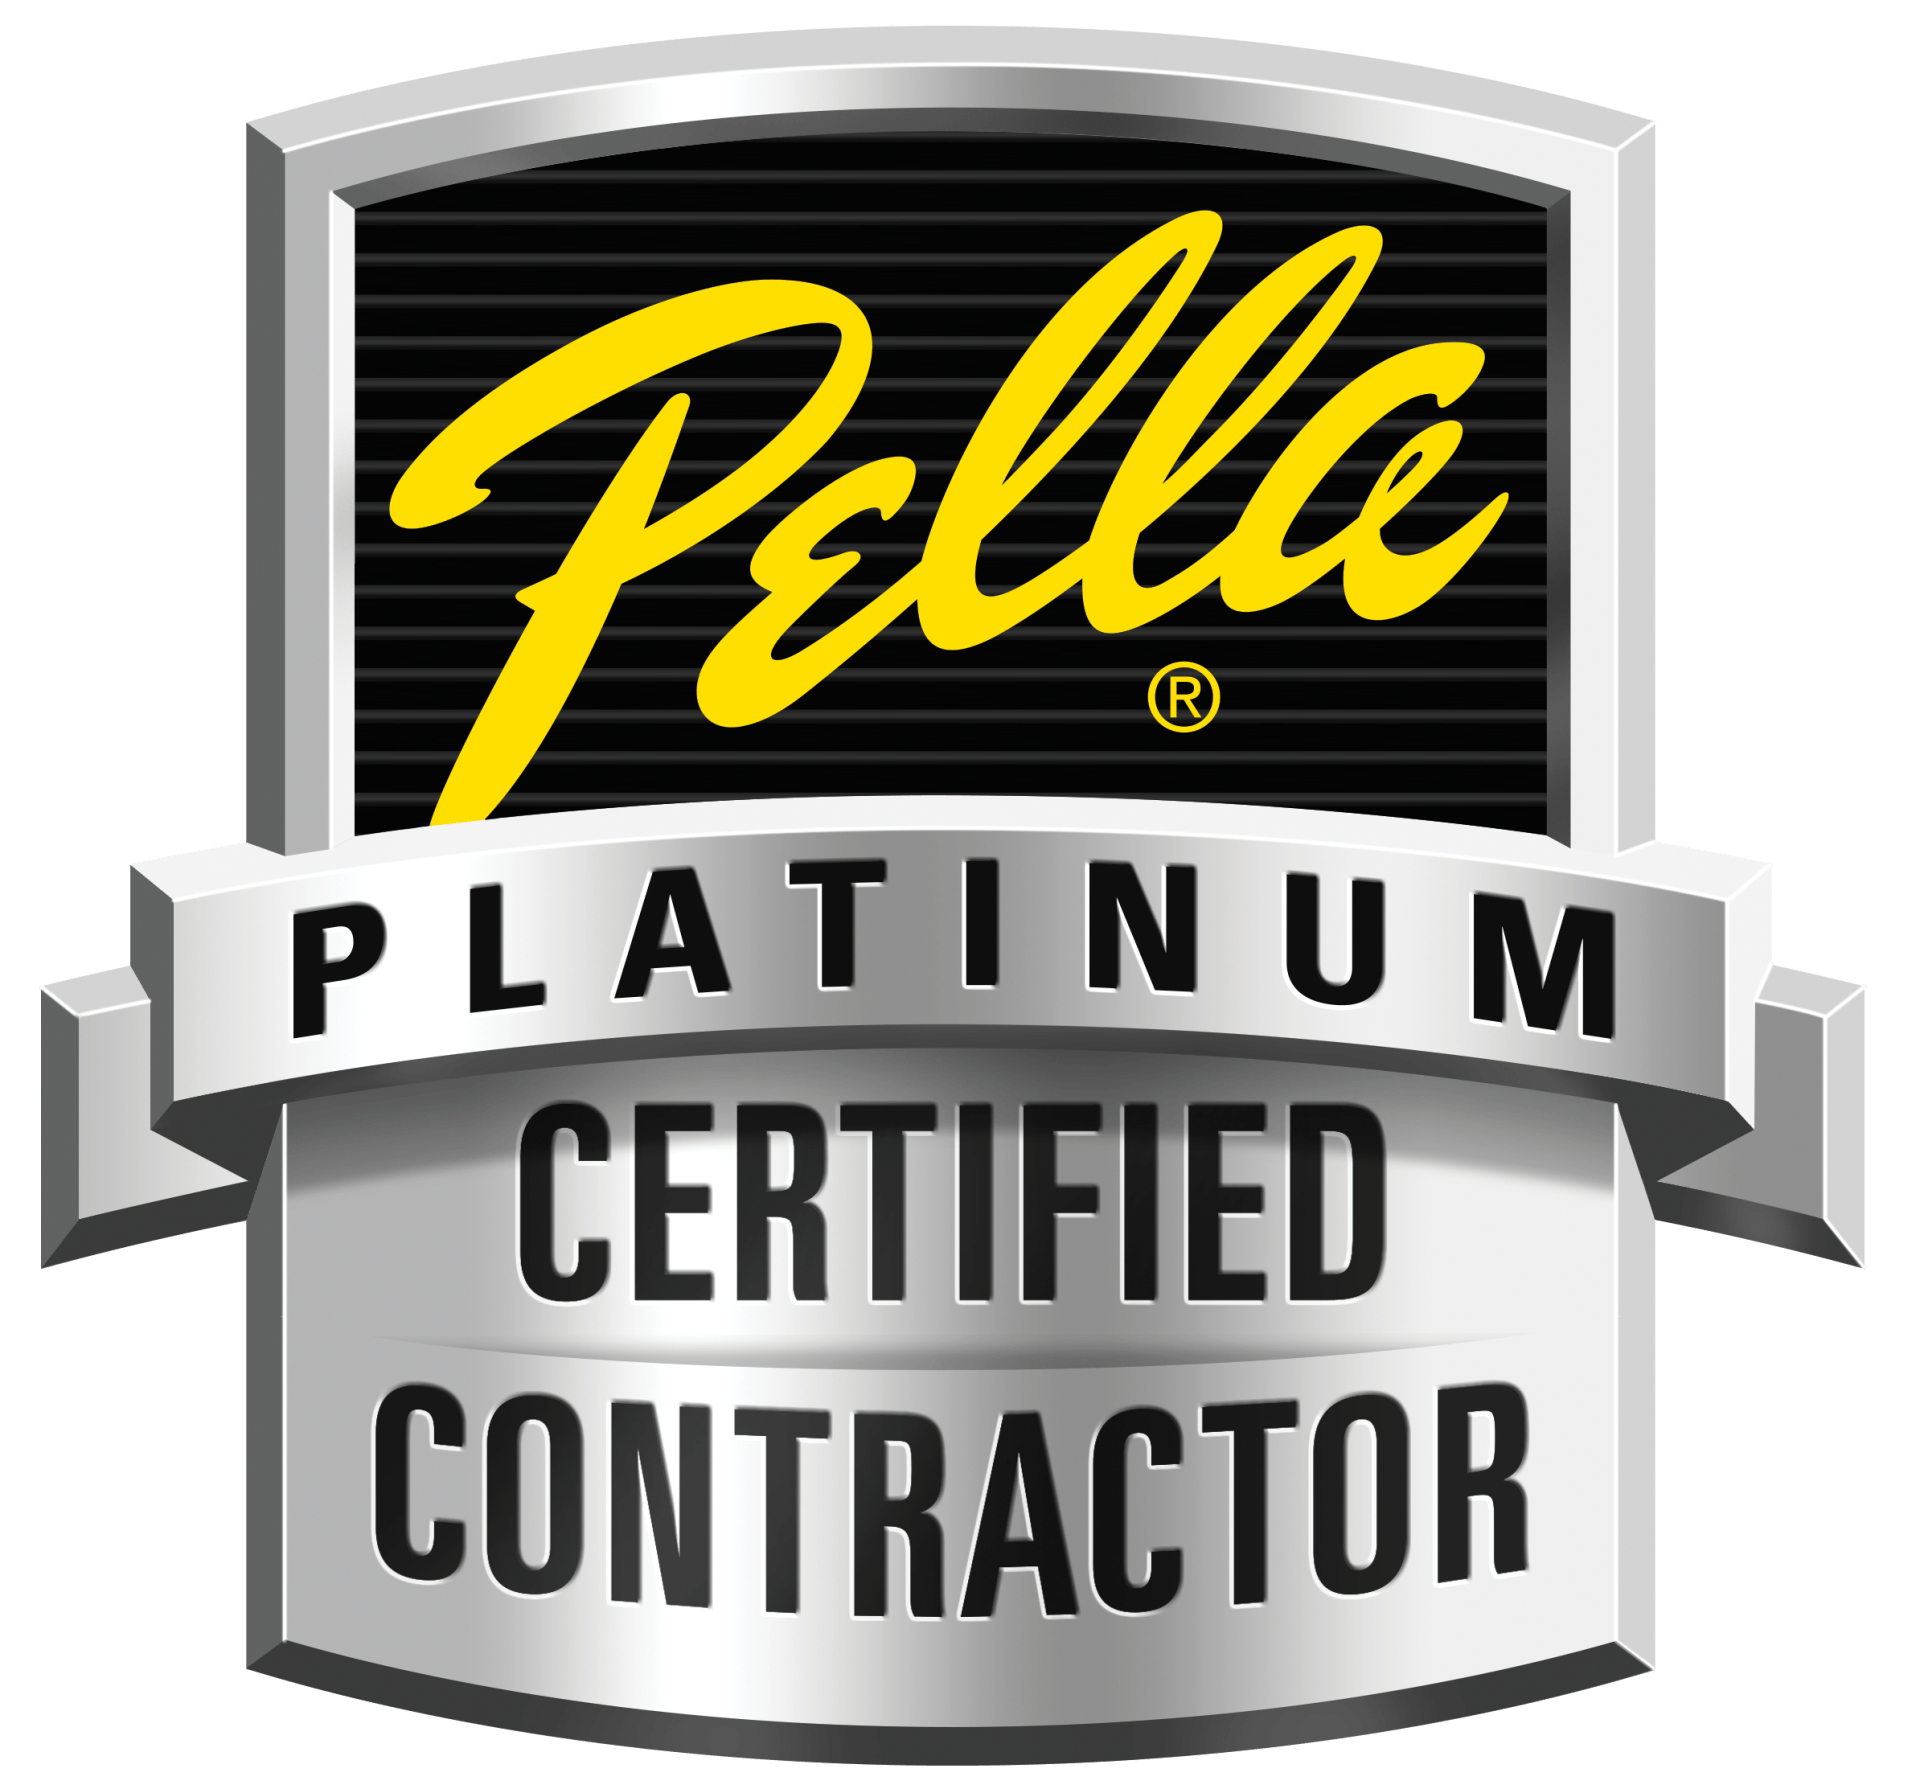 pella window platinum certified contractor logo